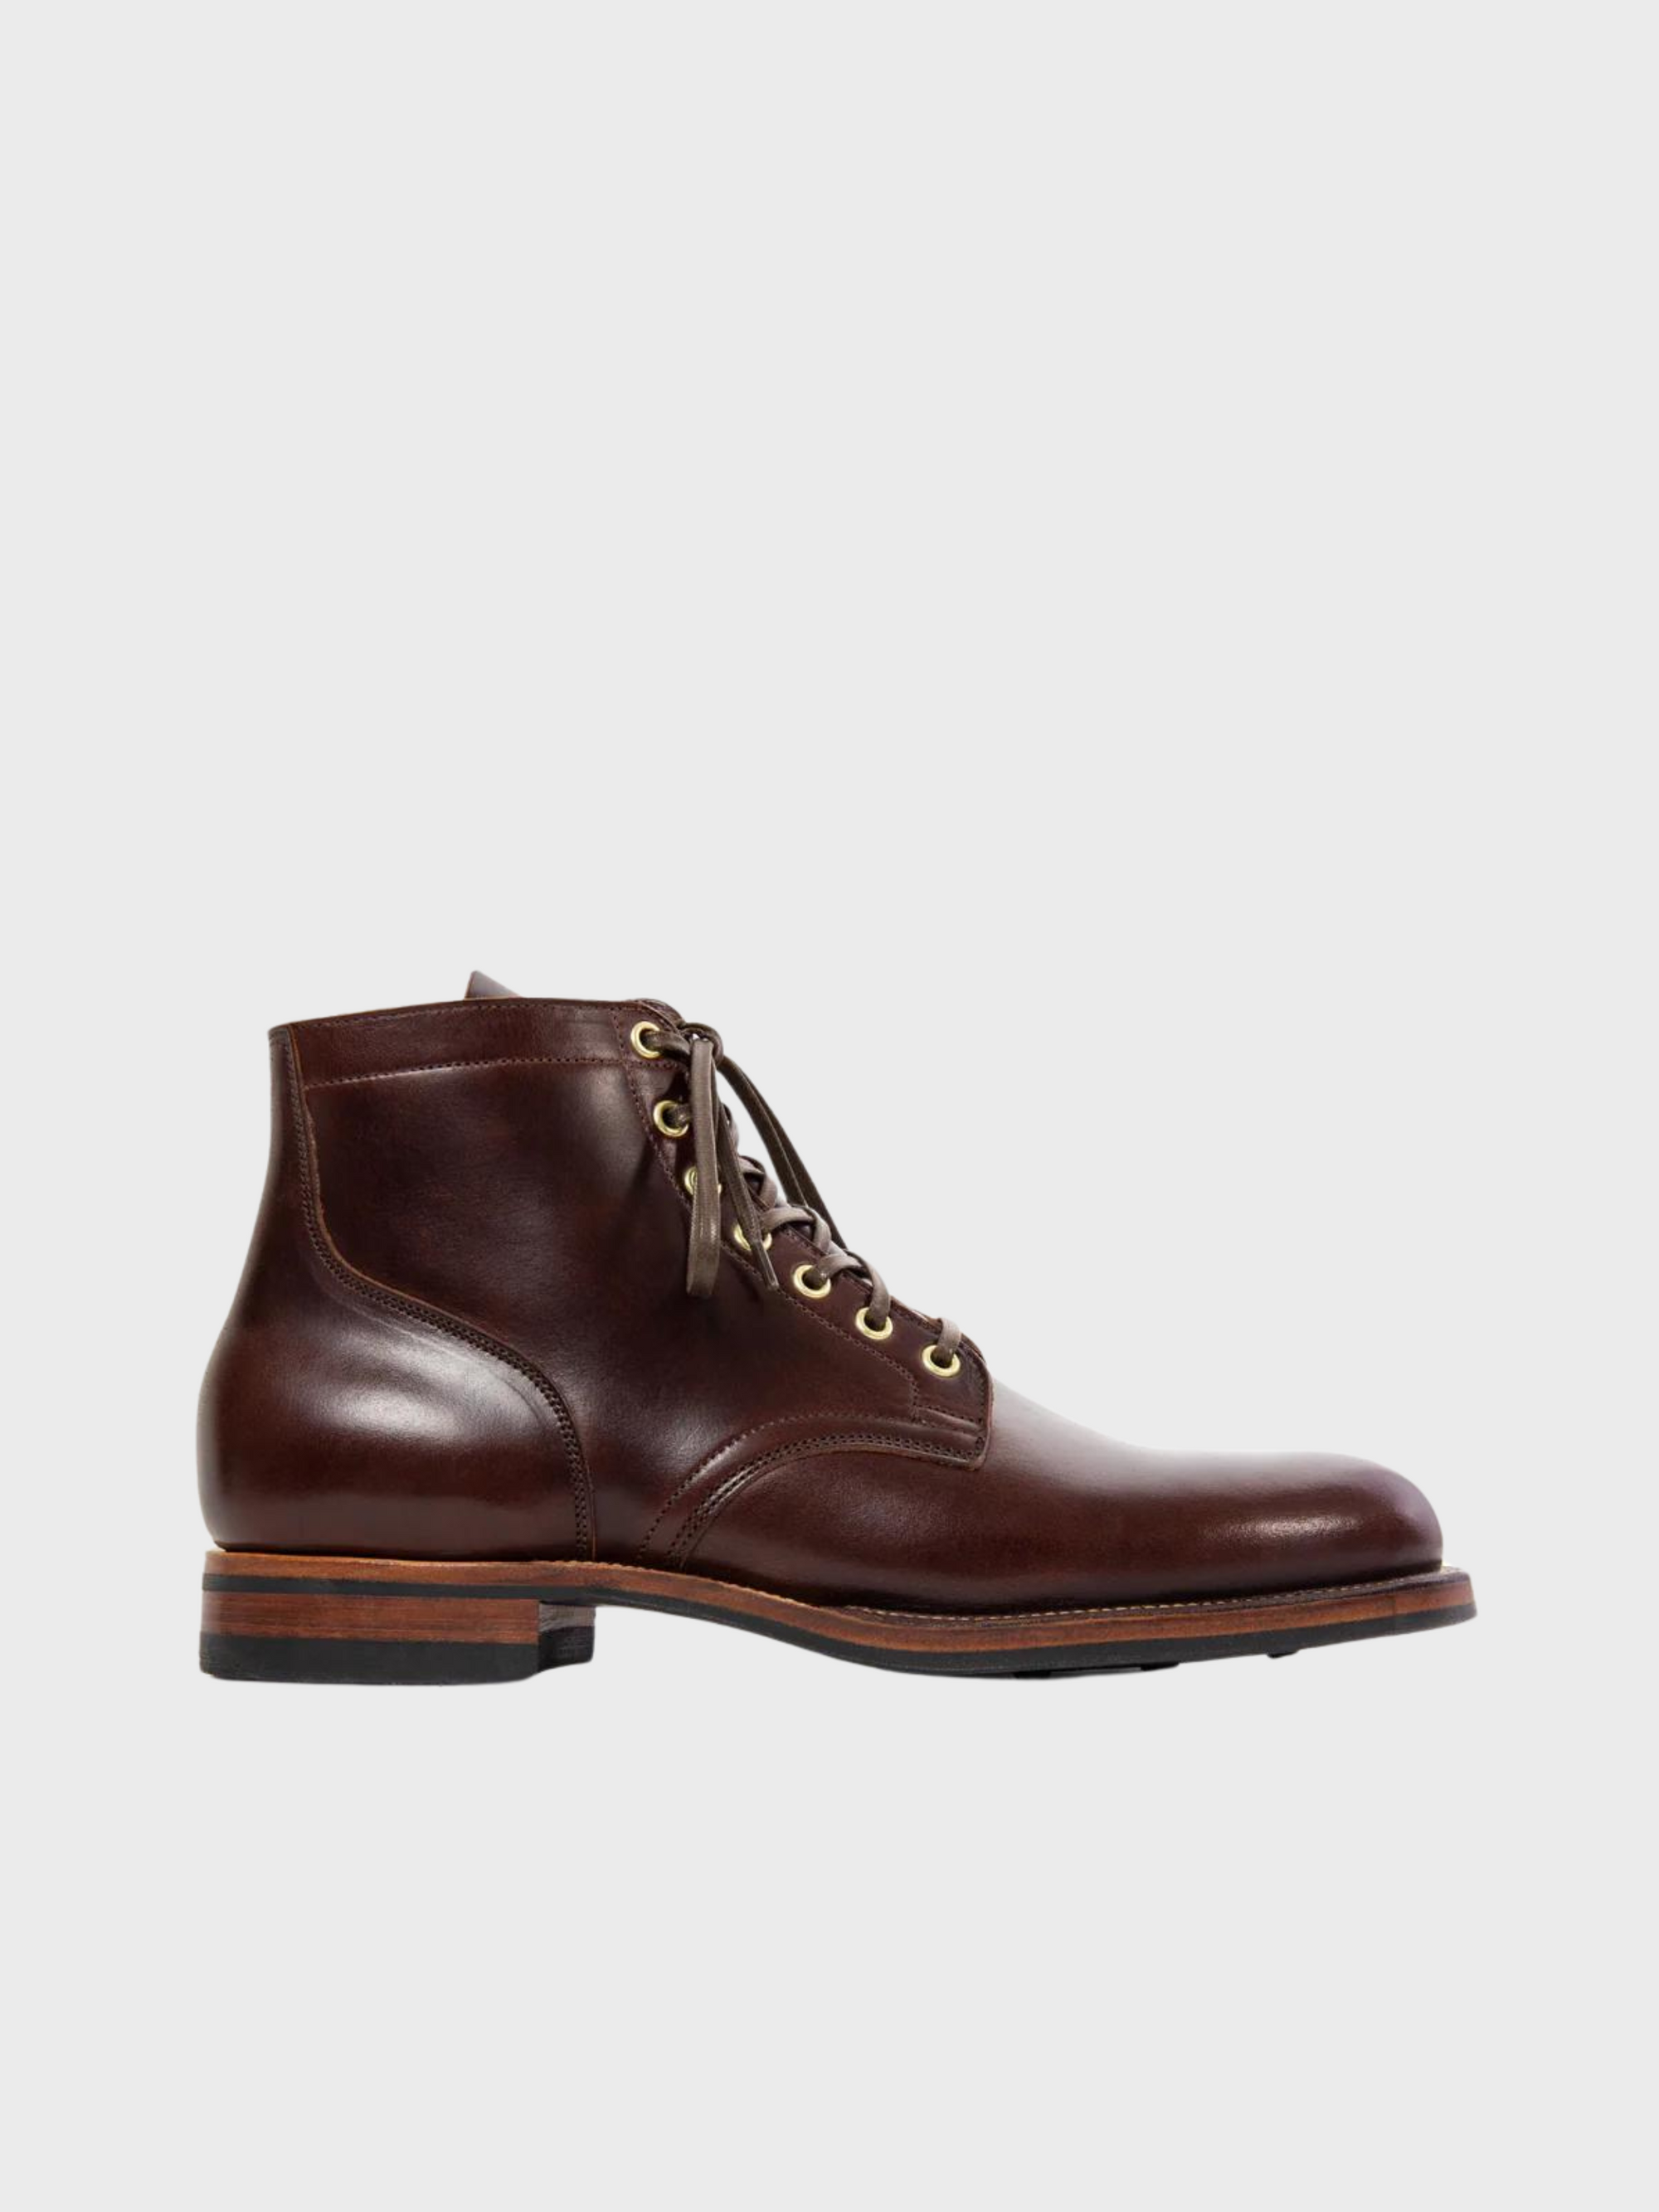 Viberg CORE - Service Boot Plain Toe Brown CXL-Men's Shoes-8-Yaletown-Vancouver-Surrey-Canada